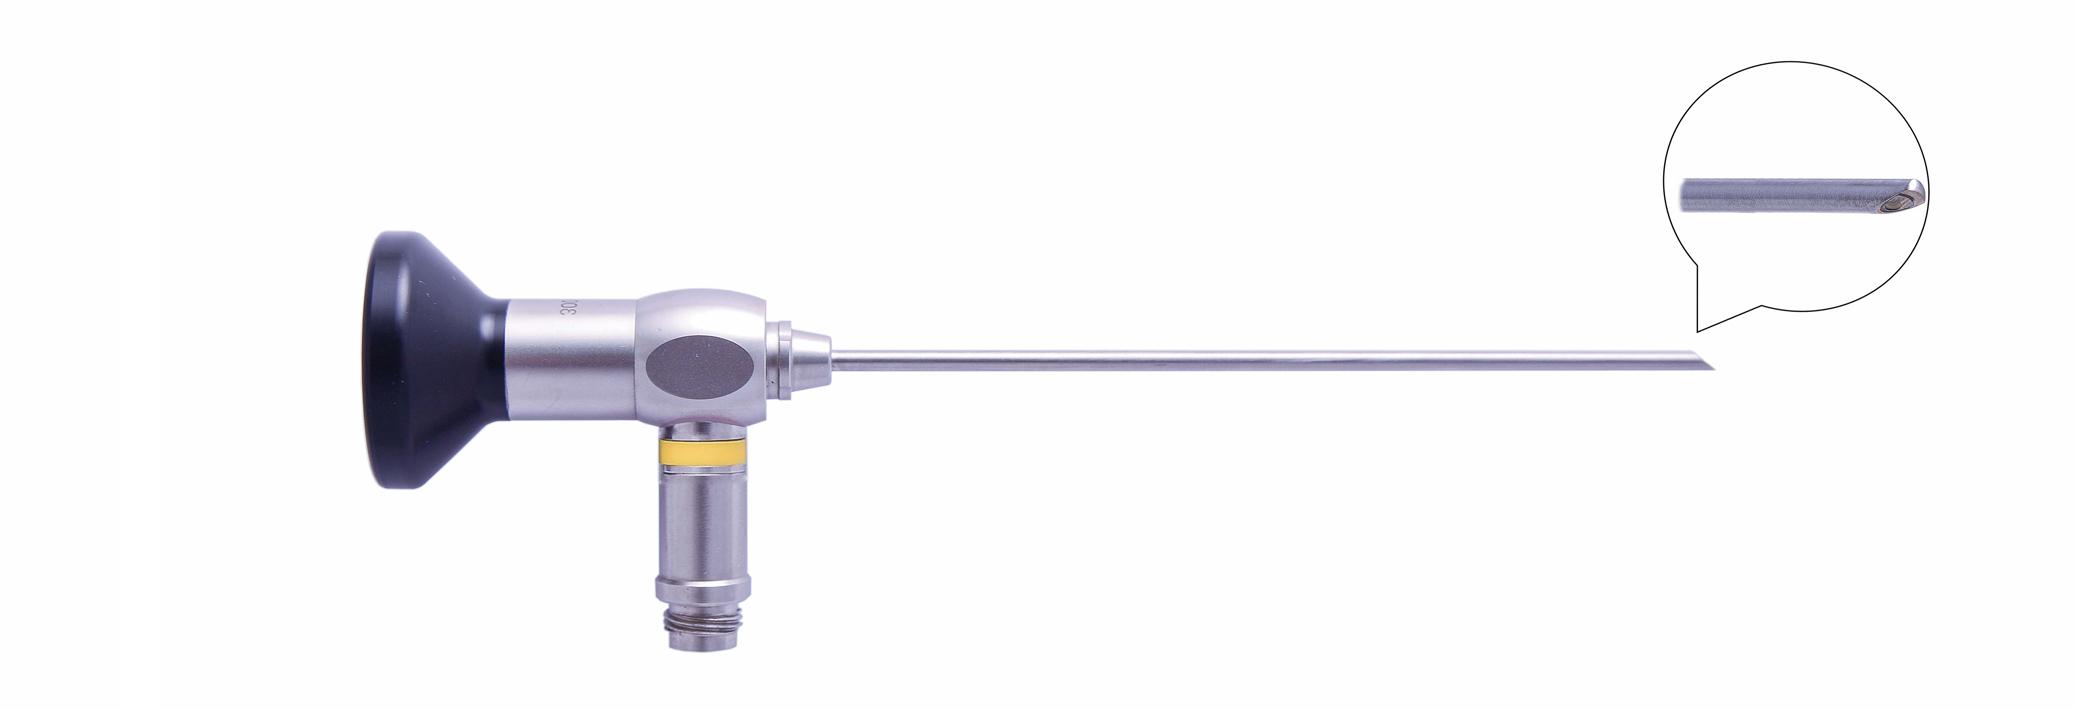 Трубка оптическая (артроскопическая, риноскопическая) ТОАР-016 диам. 4 мм, с углом наблюдения 70 гр. (дл. 110 мм)